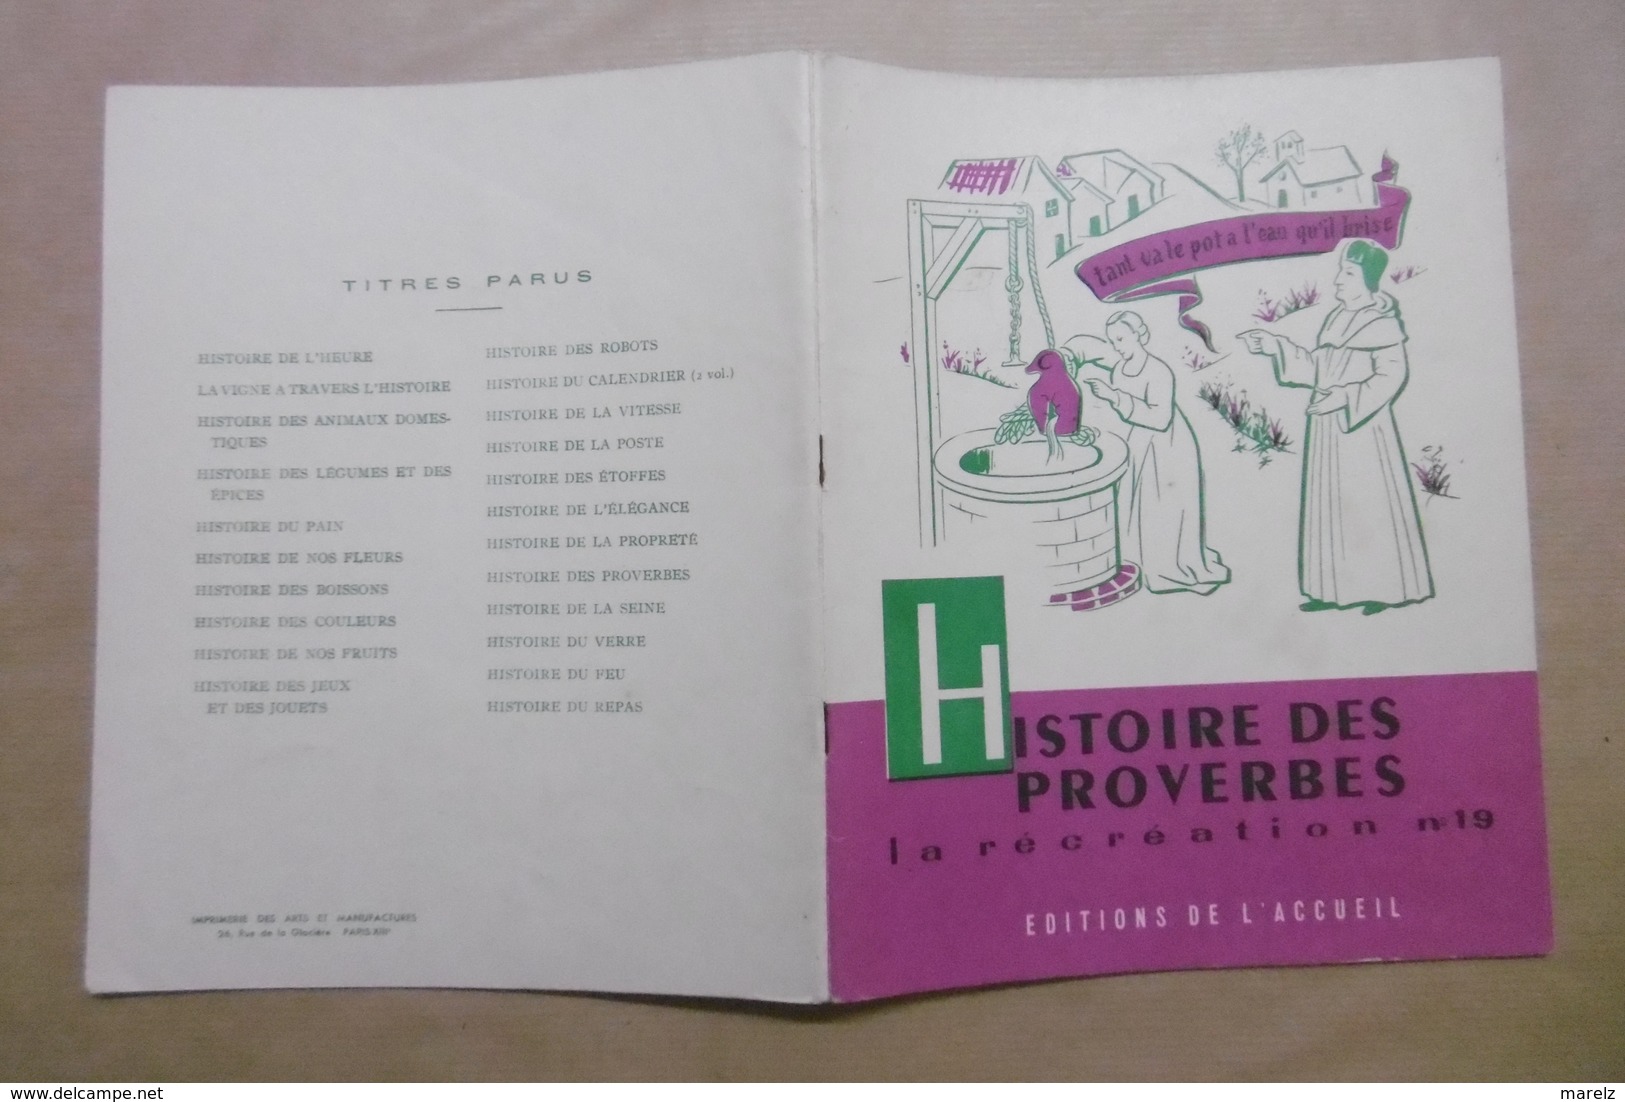 HISTOIRE DES PROVERBES La Récréation N°19 Editions De L'Accueil - Livret Scolaire 6-12 Ans - Humour Citations Anciennes - 6-12 Ans